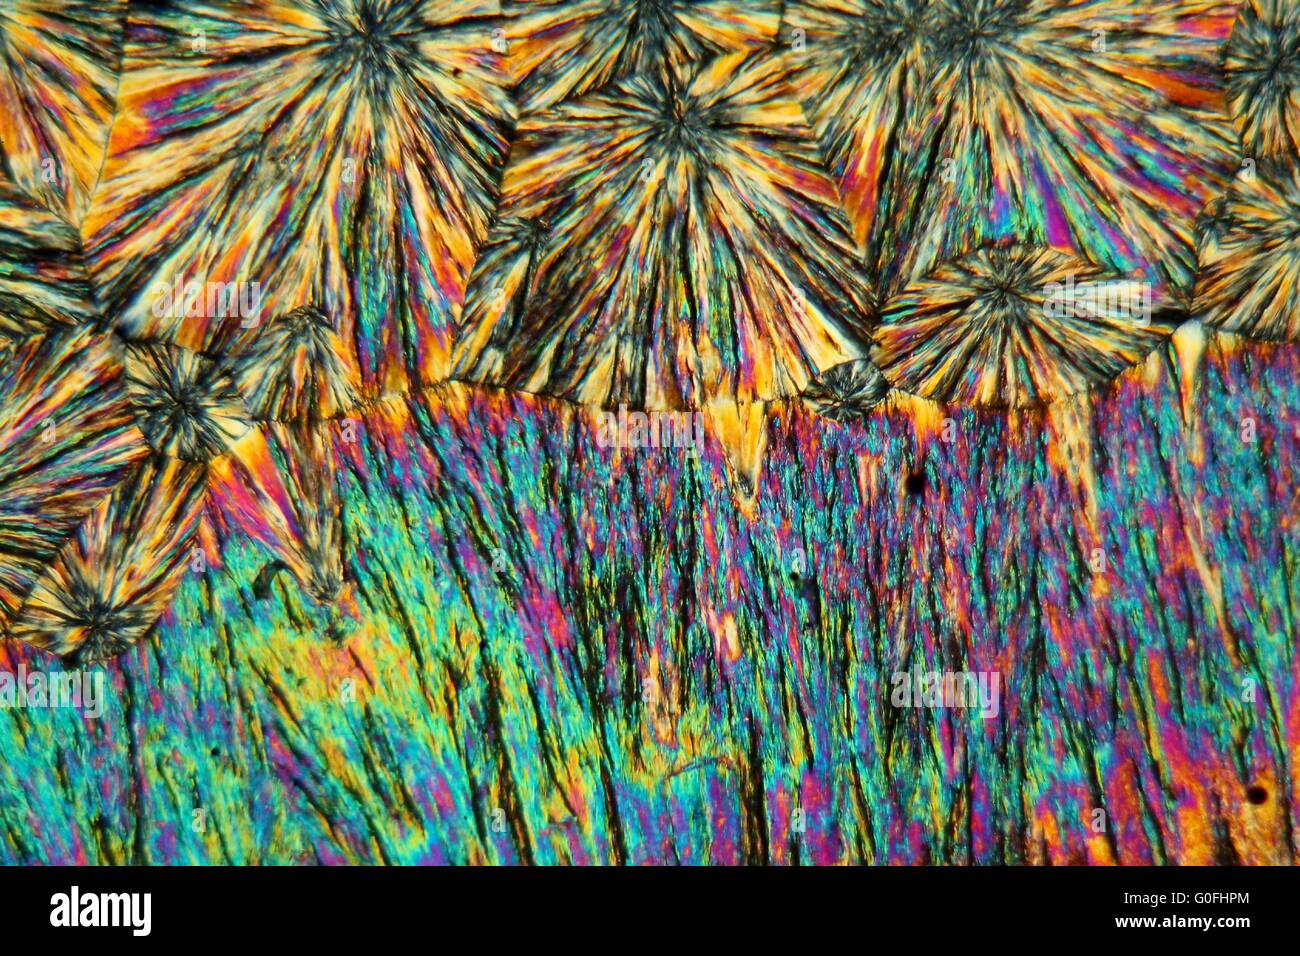 Cristalli di metamizolo sotto il microscopio. Foto Stock